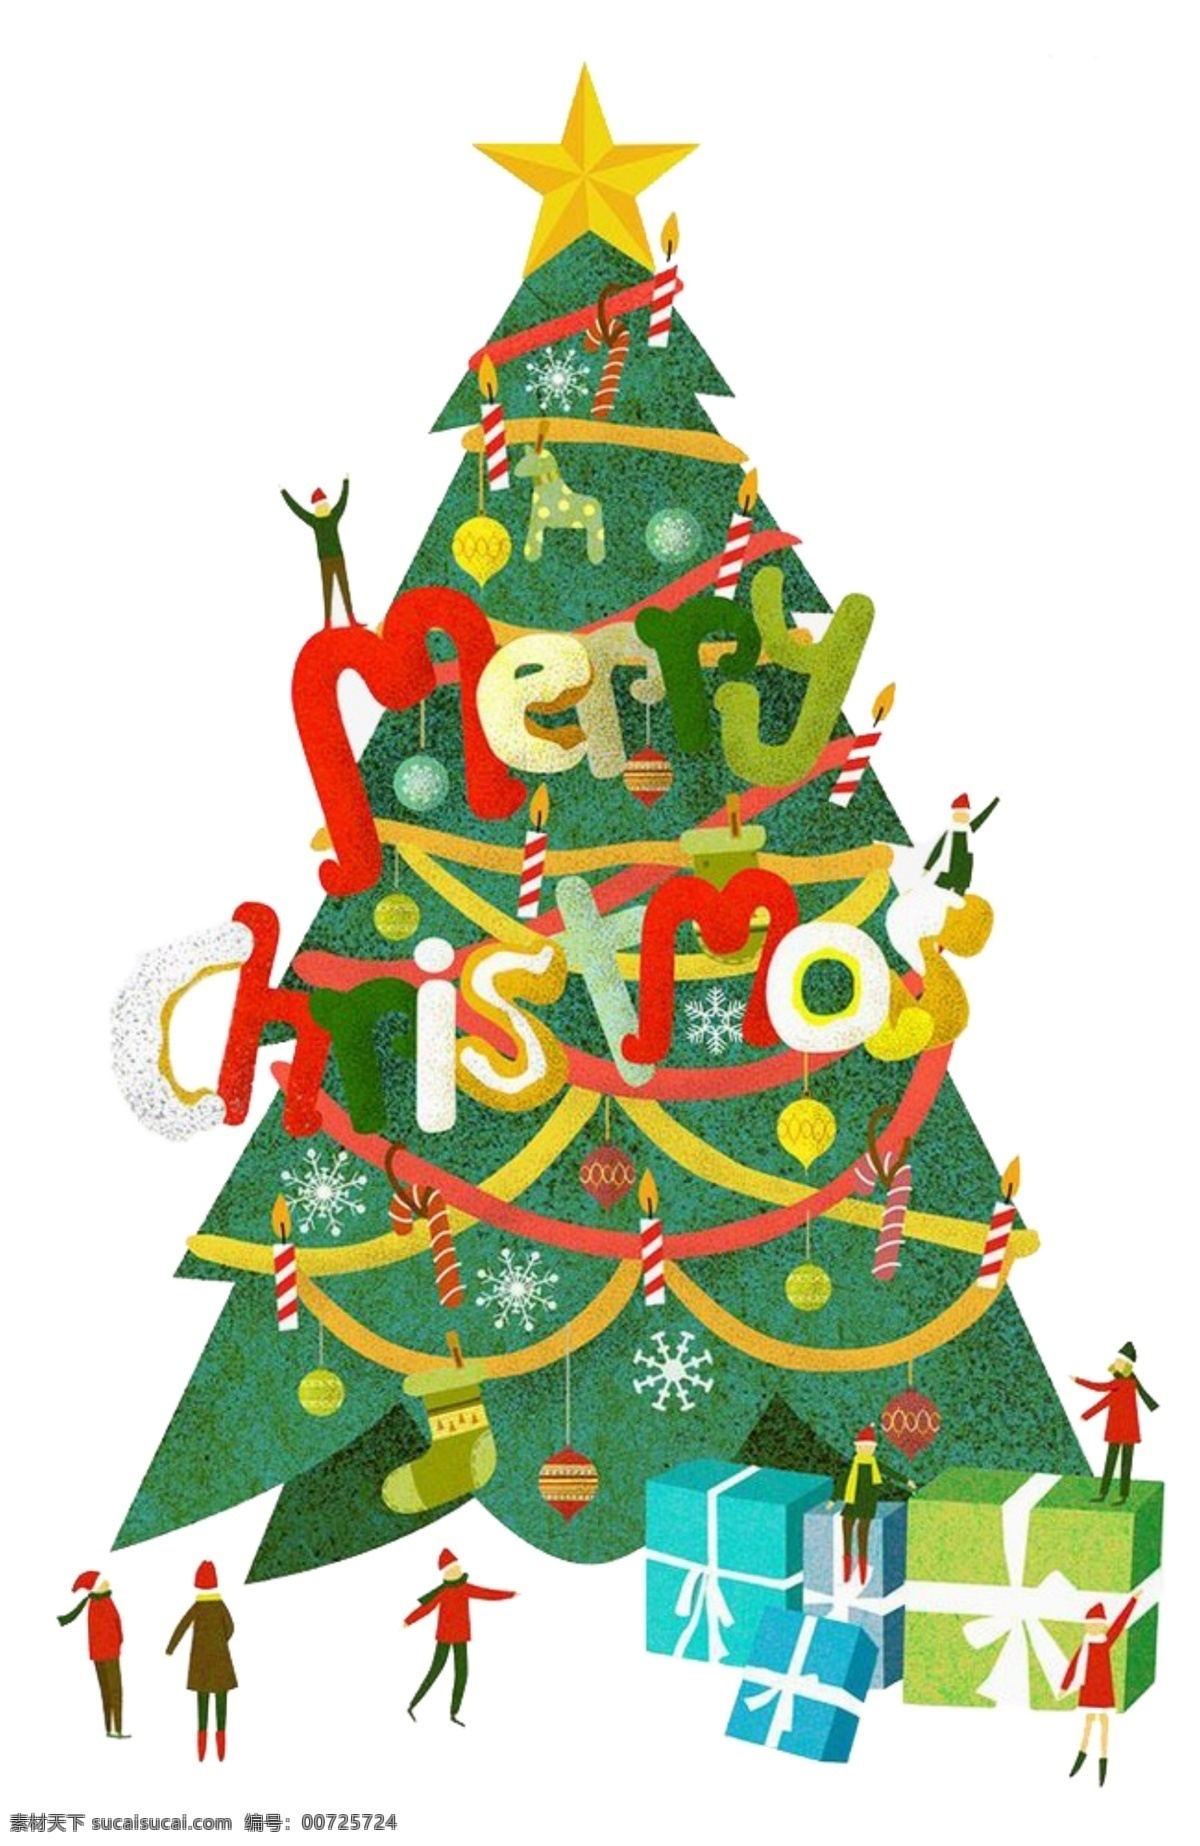 圣诞节 元素 卡通 圣诞树 装饰 集合 卡通圣诞树 可爱的圣诞树 圣诞节装饰 圣诞快乐 圣诞树素材 圣诞树图案 树和礼物